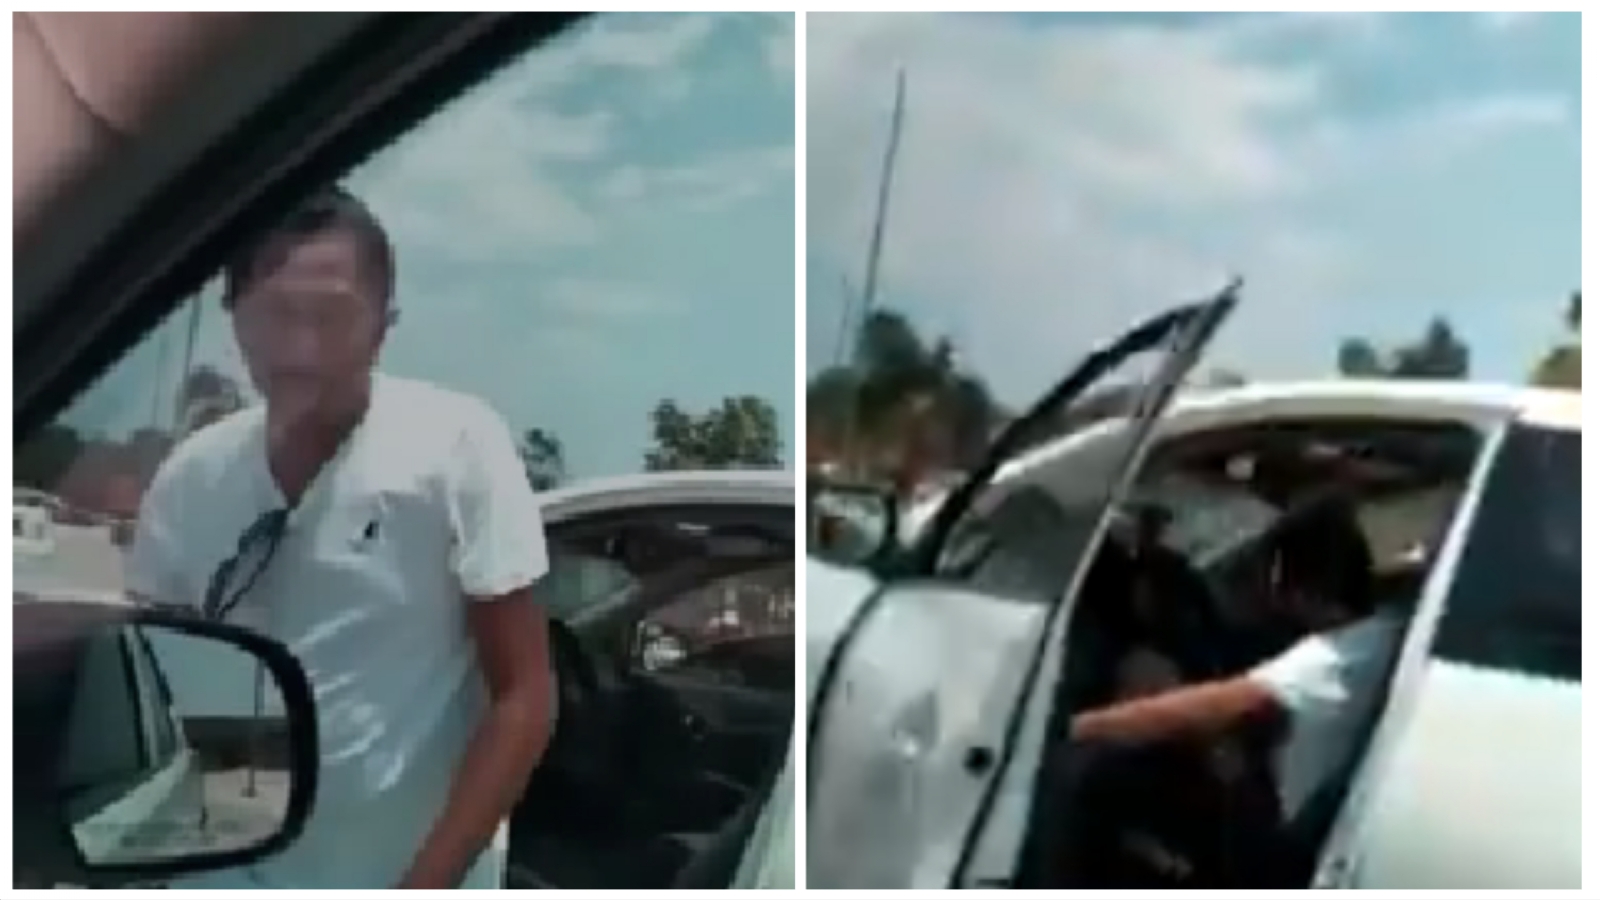 Los videos se aprecia el momento en que el hombre violenta verbalmente al conductor,